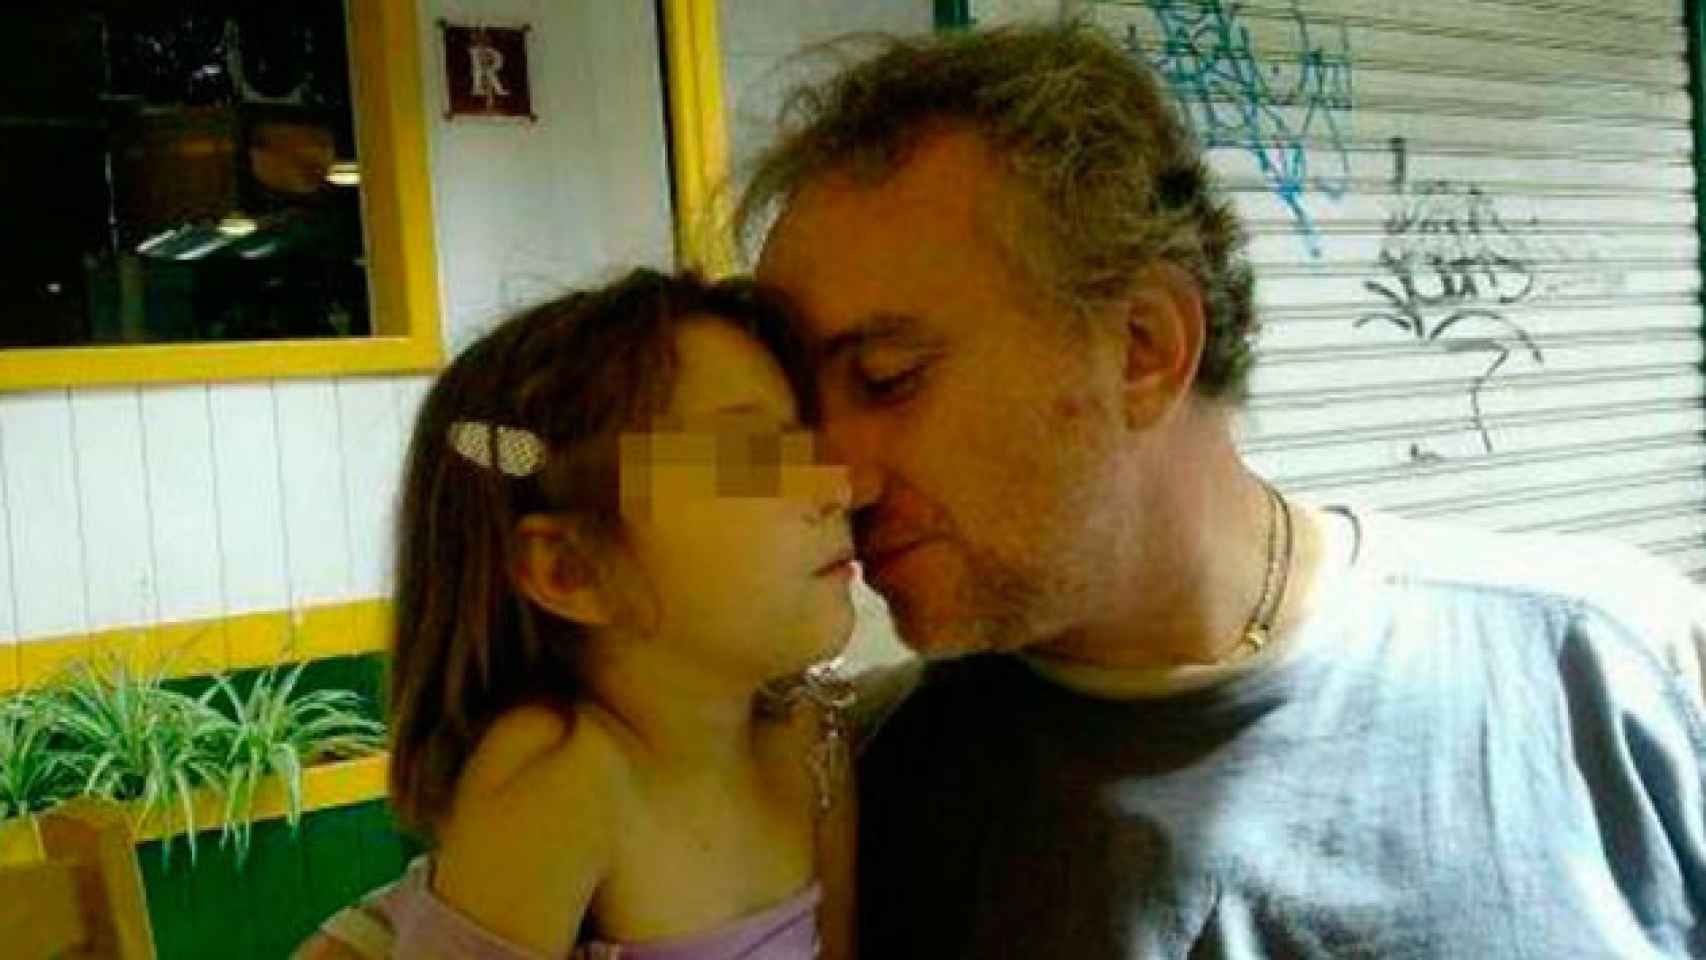 El padre de Nadia, Fernando Blanco, con su hija, de quien presuntamente tomó imágenes de contenido sexual / CG